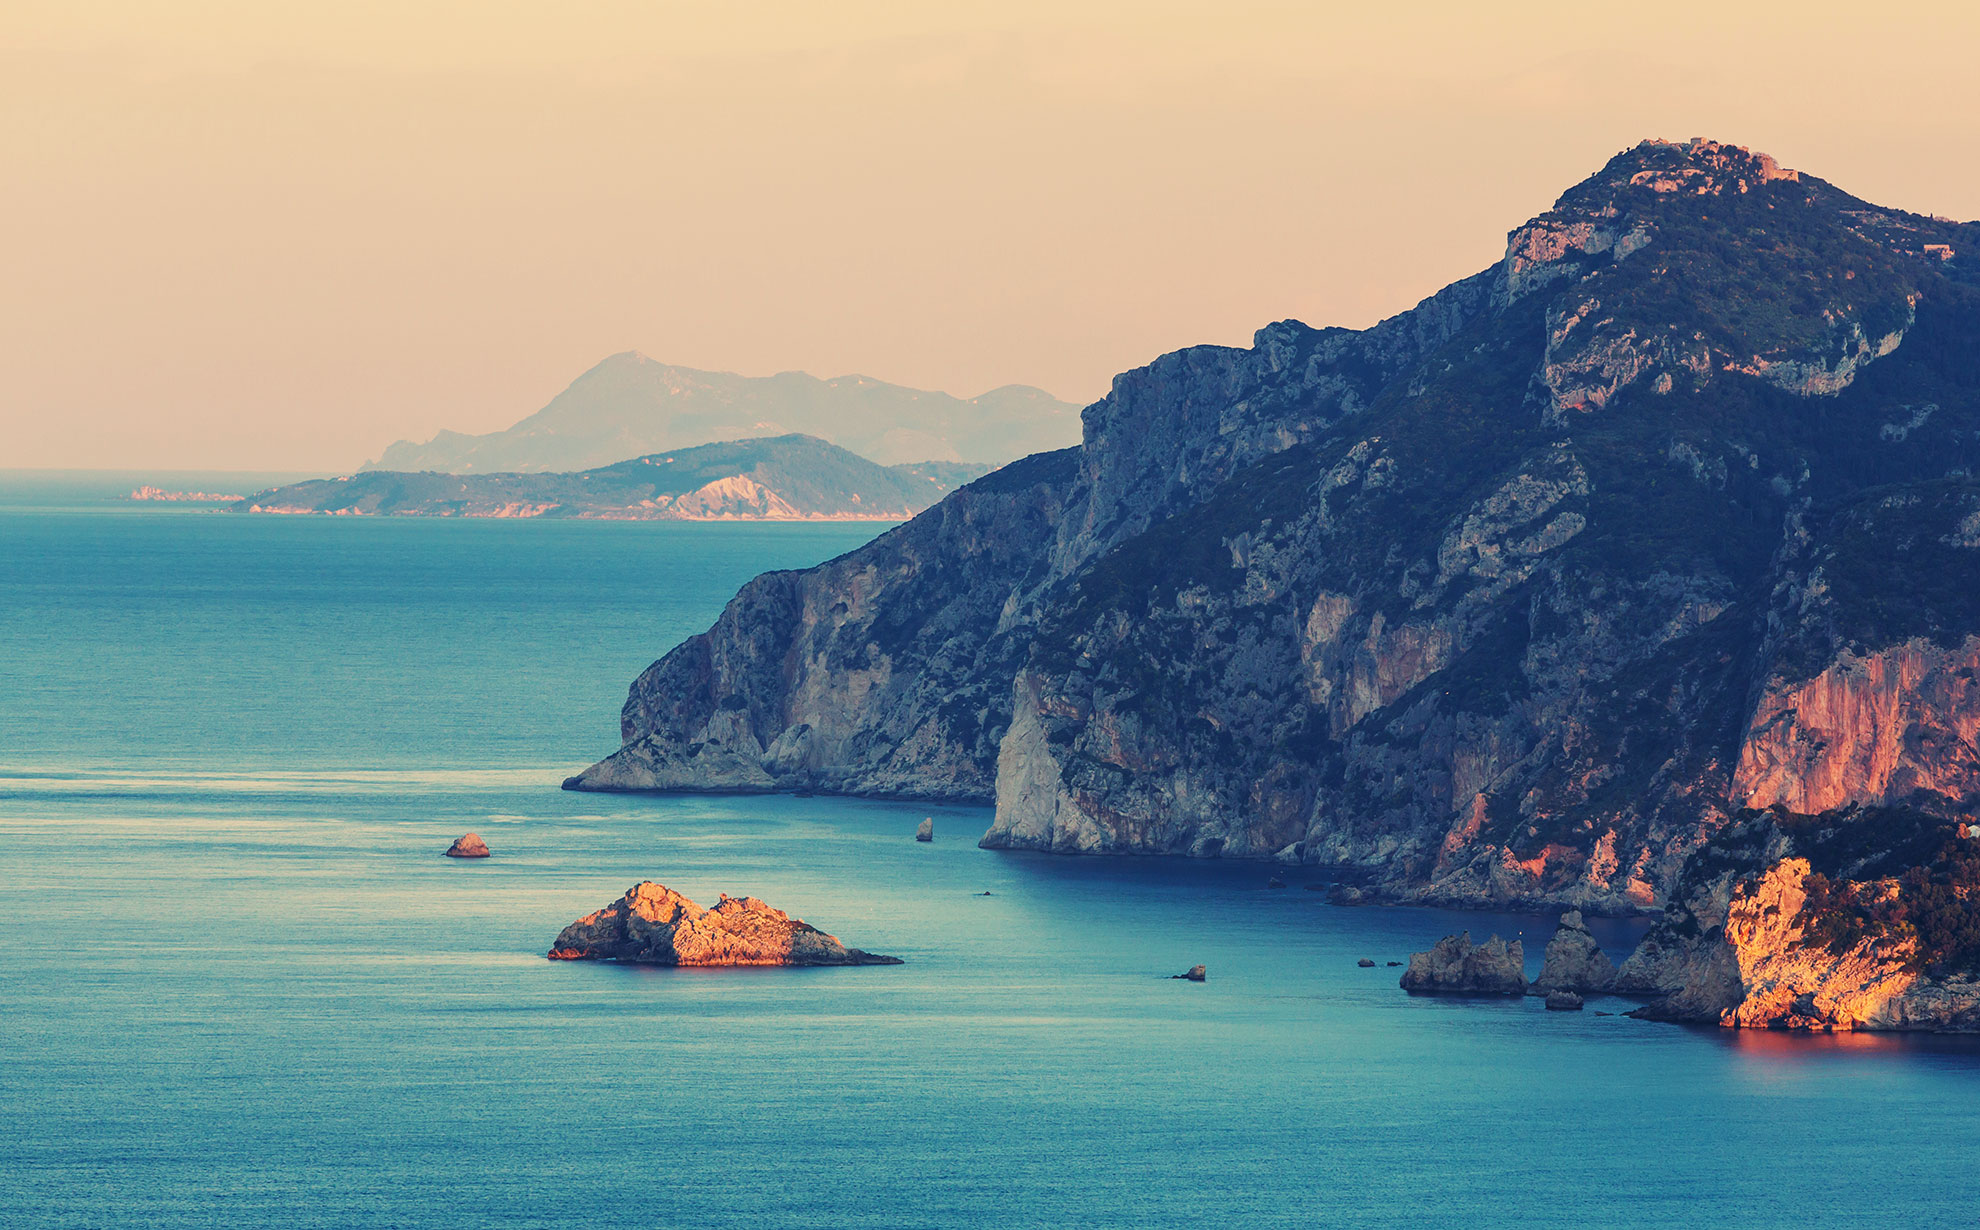 Wybrzeże Korfu. Ilustracja do hasła krzyżówki